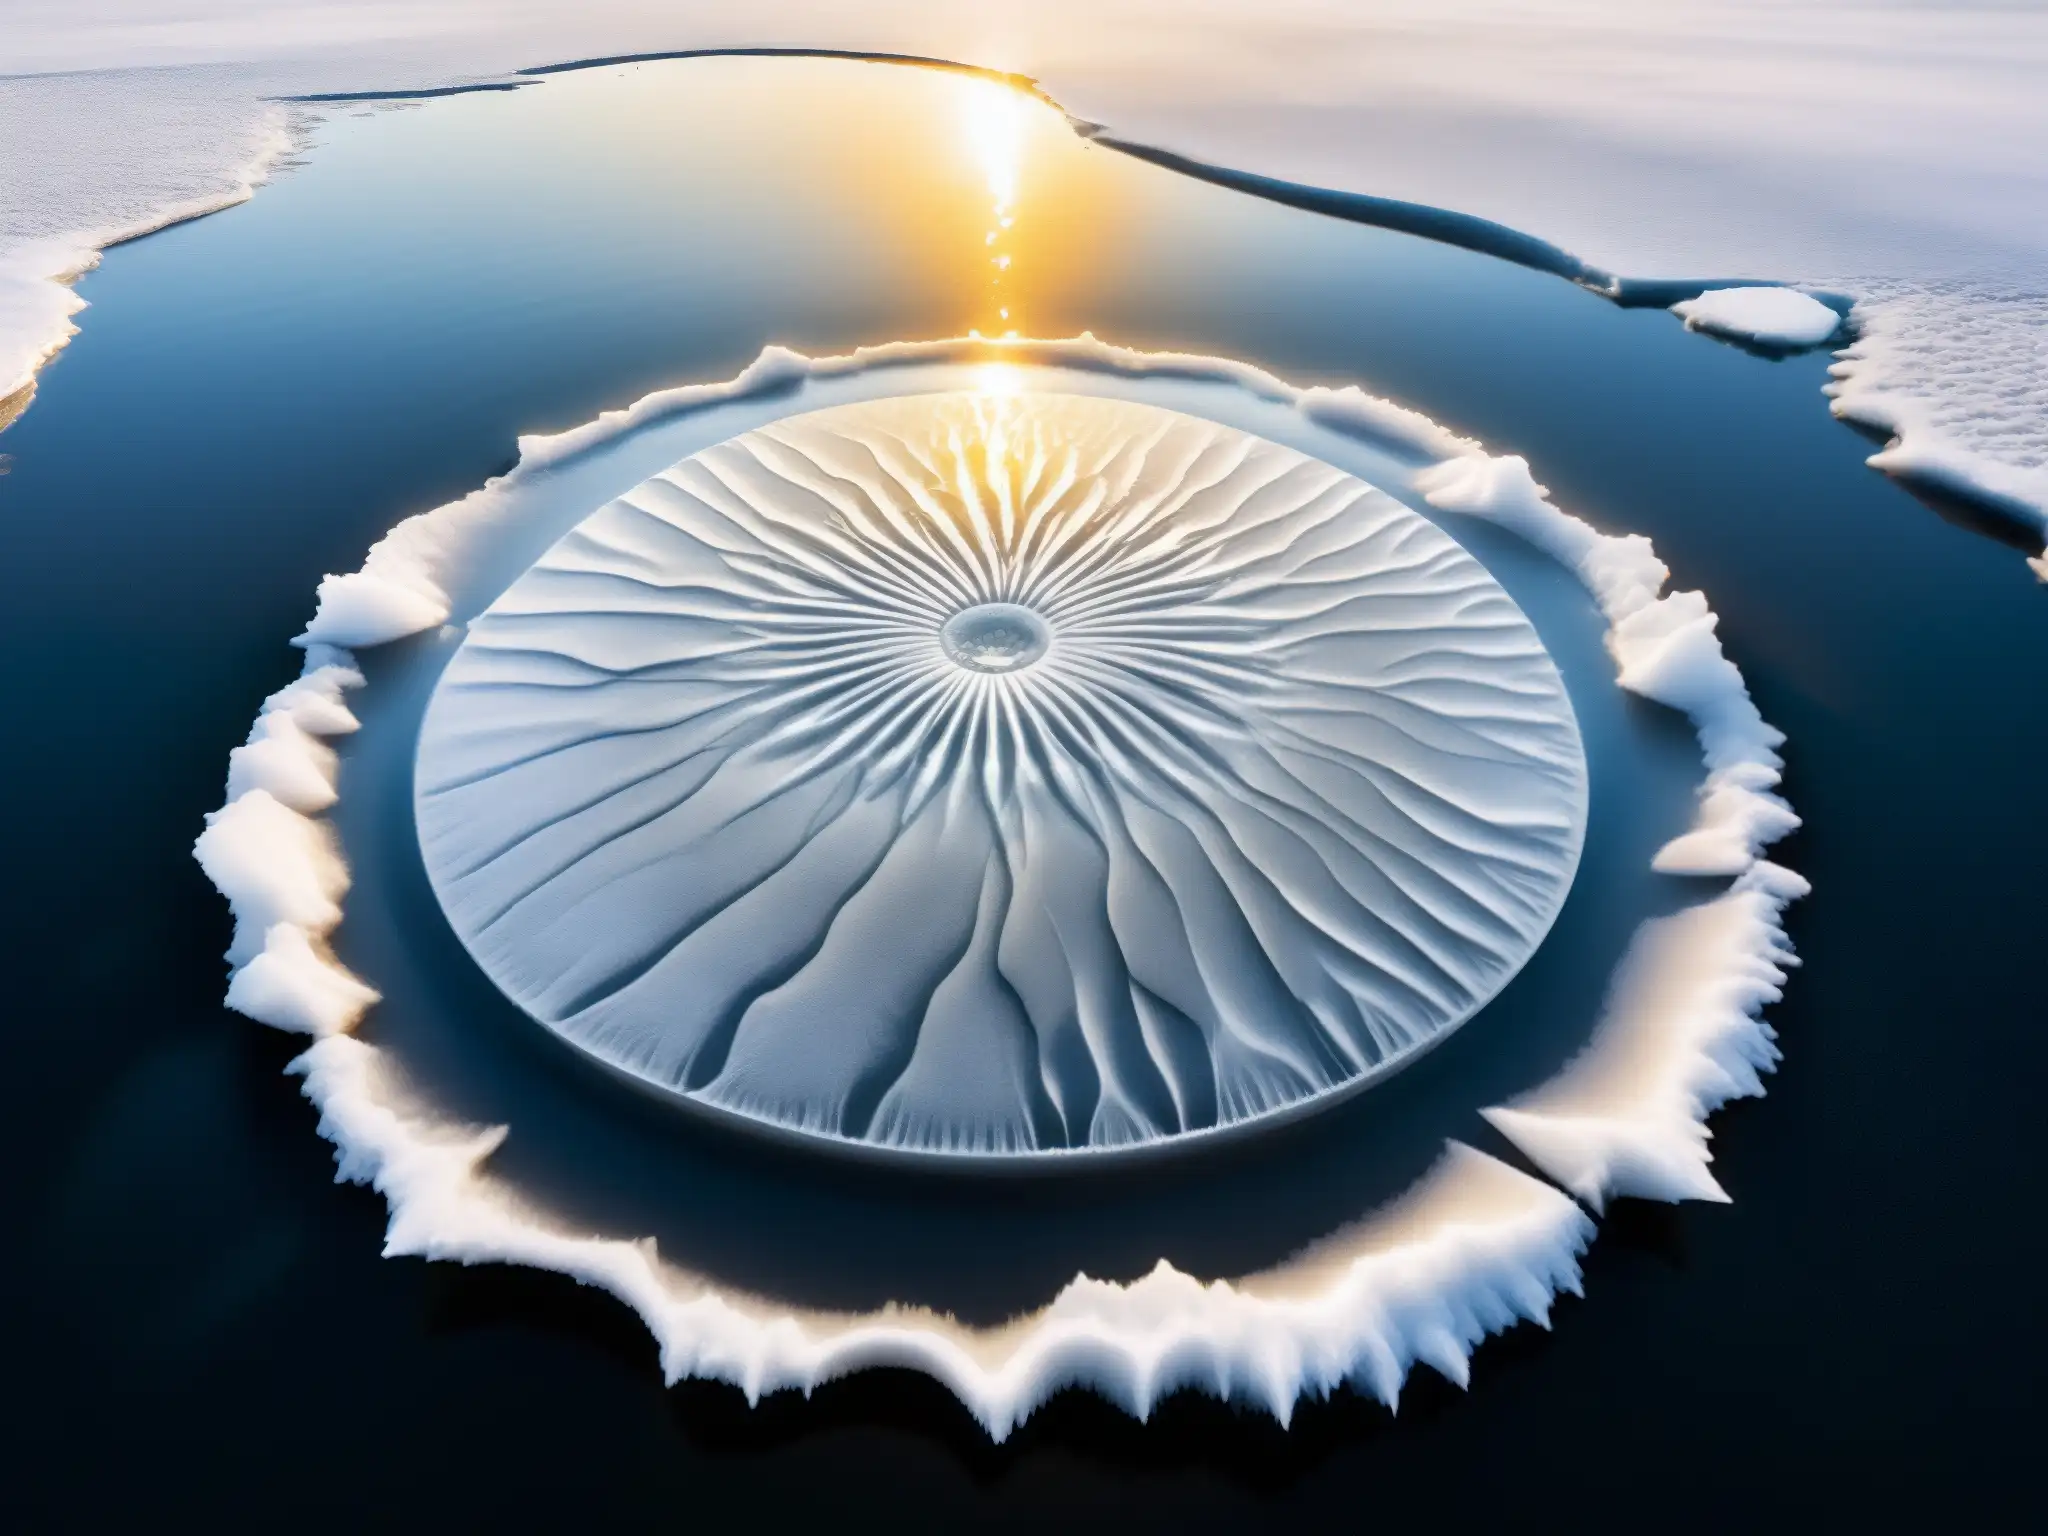 Misteriosos círculos de hielo crean una atmósfera hipnotizante en un río de América, con texturas y patrones intrincados capturados en el hielo